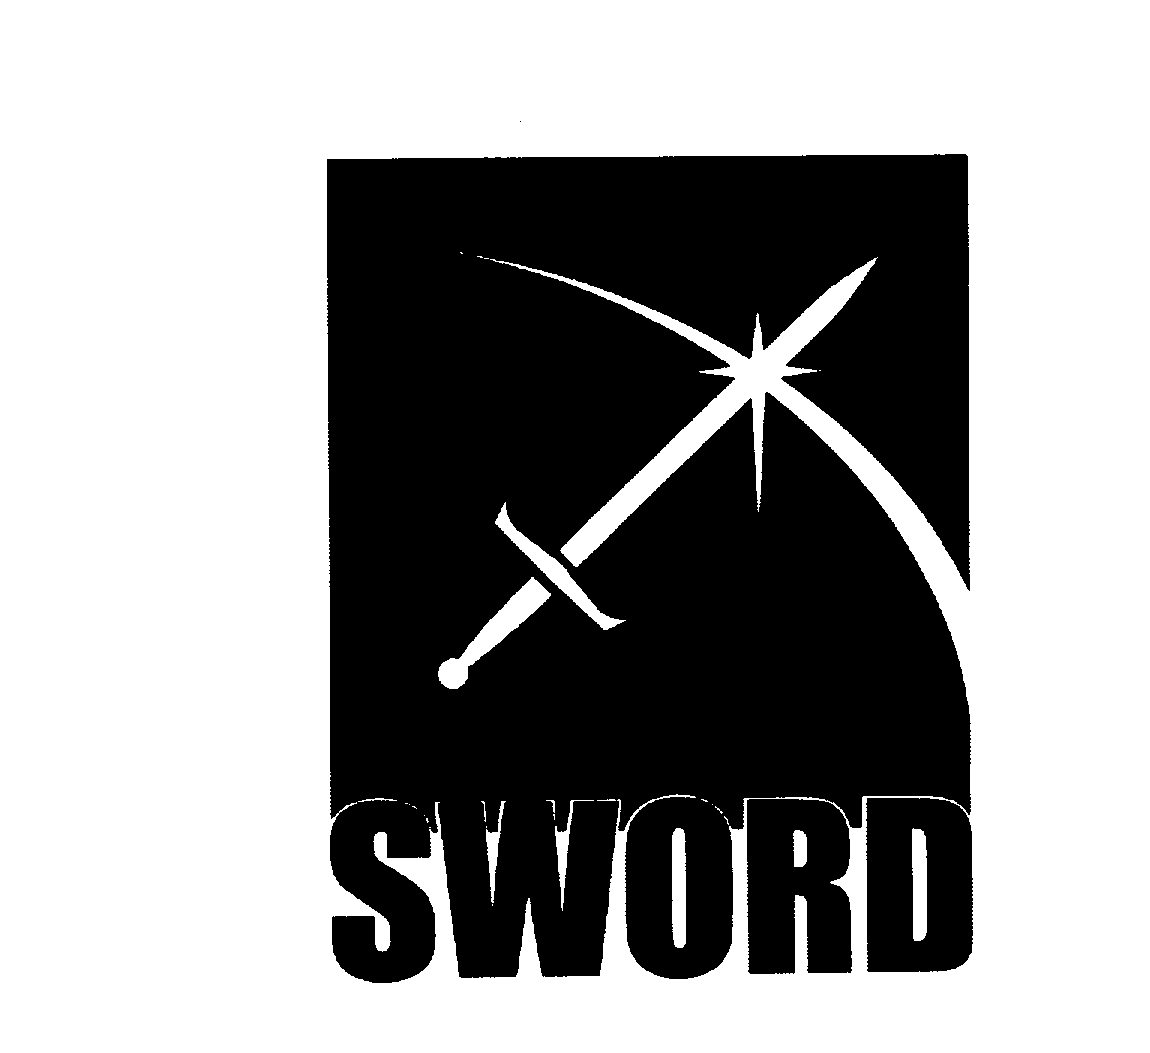 SWORD